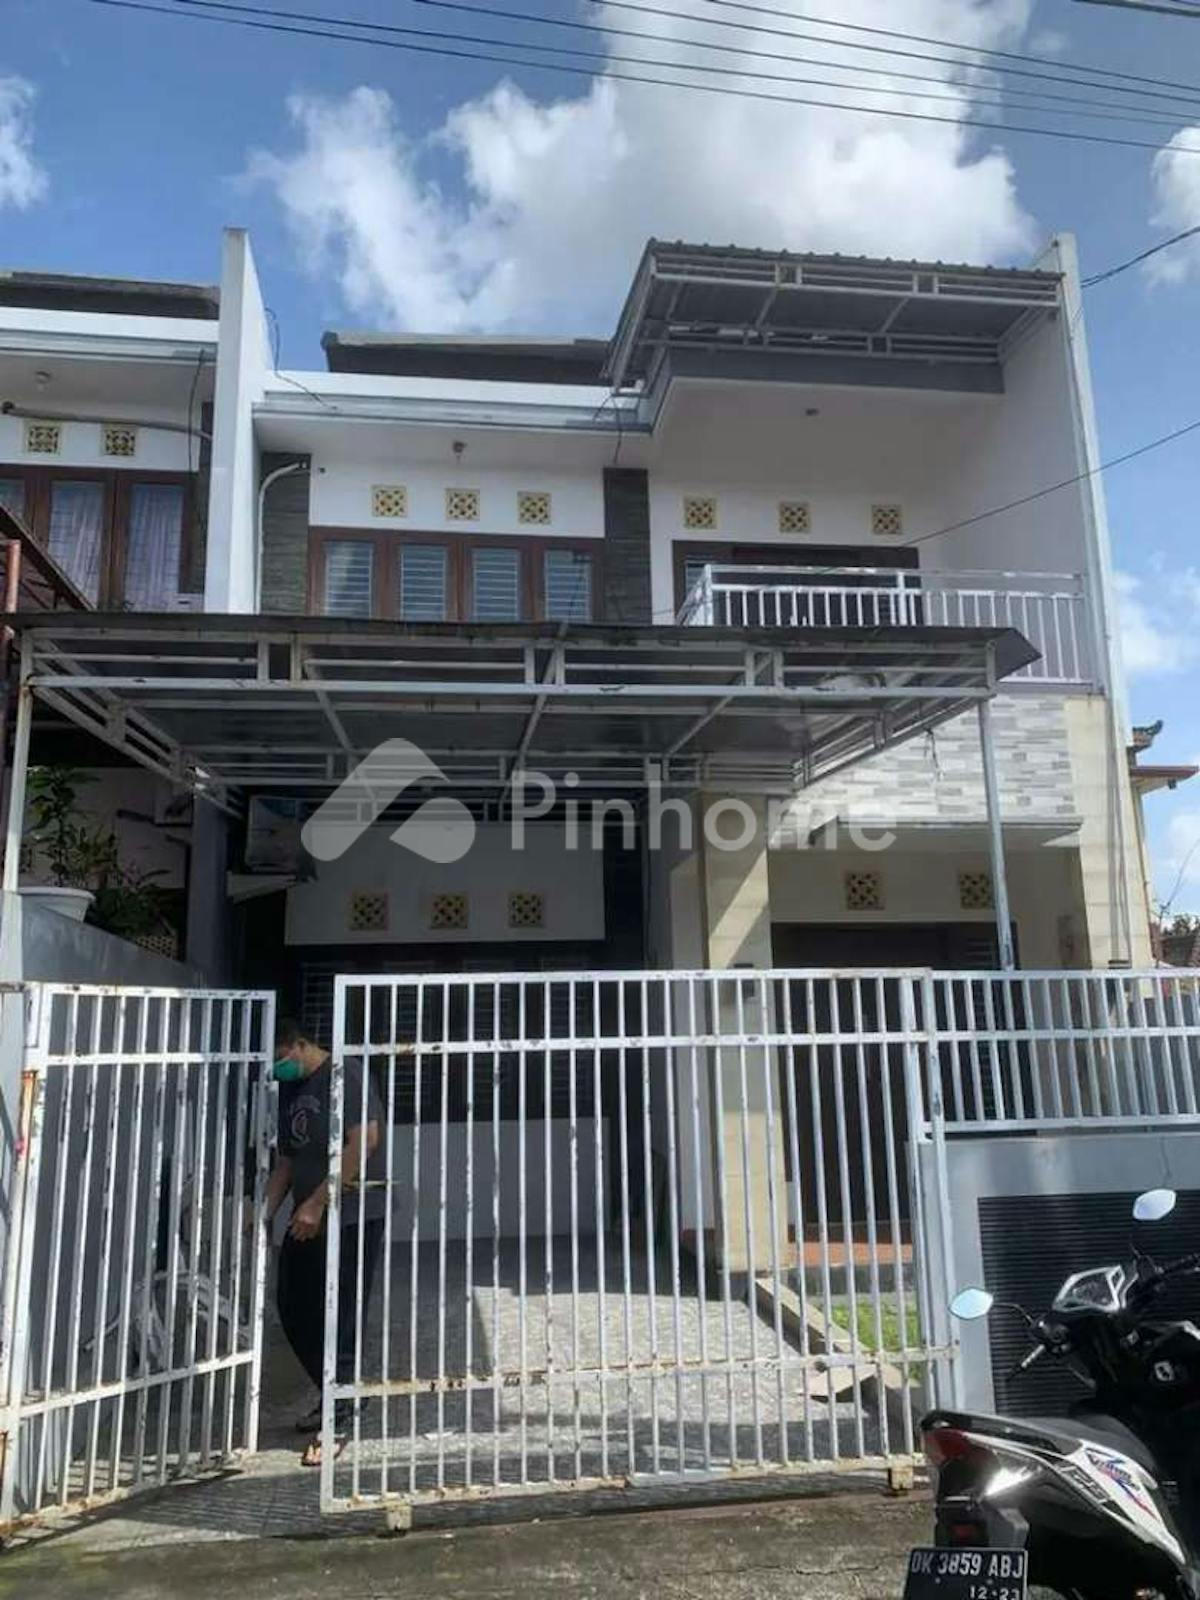 Dijual Rumah Siap Huni Dekat Pantai di Denpasar Barat - Gambar 1